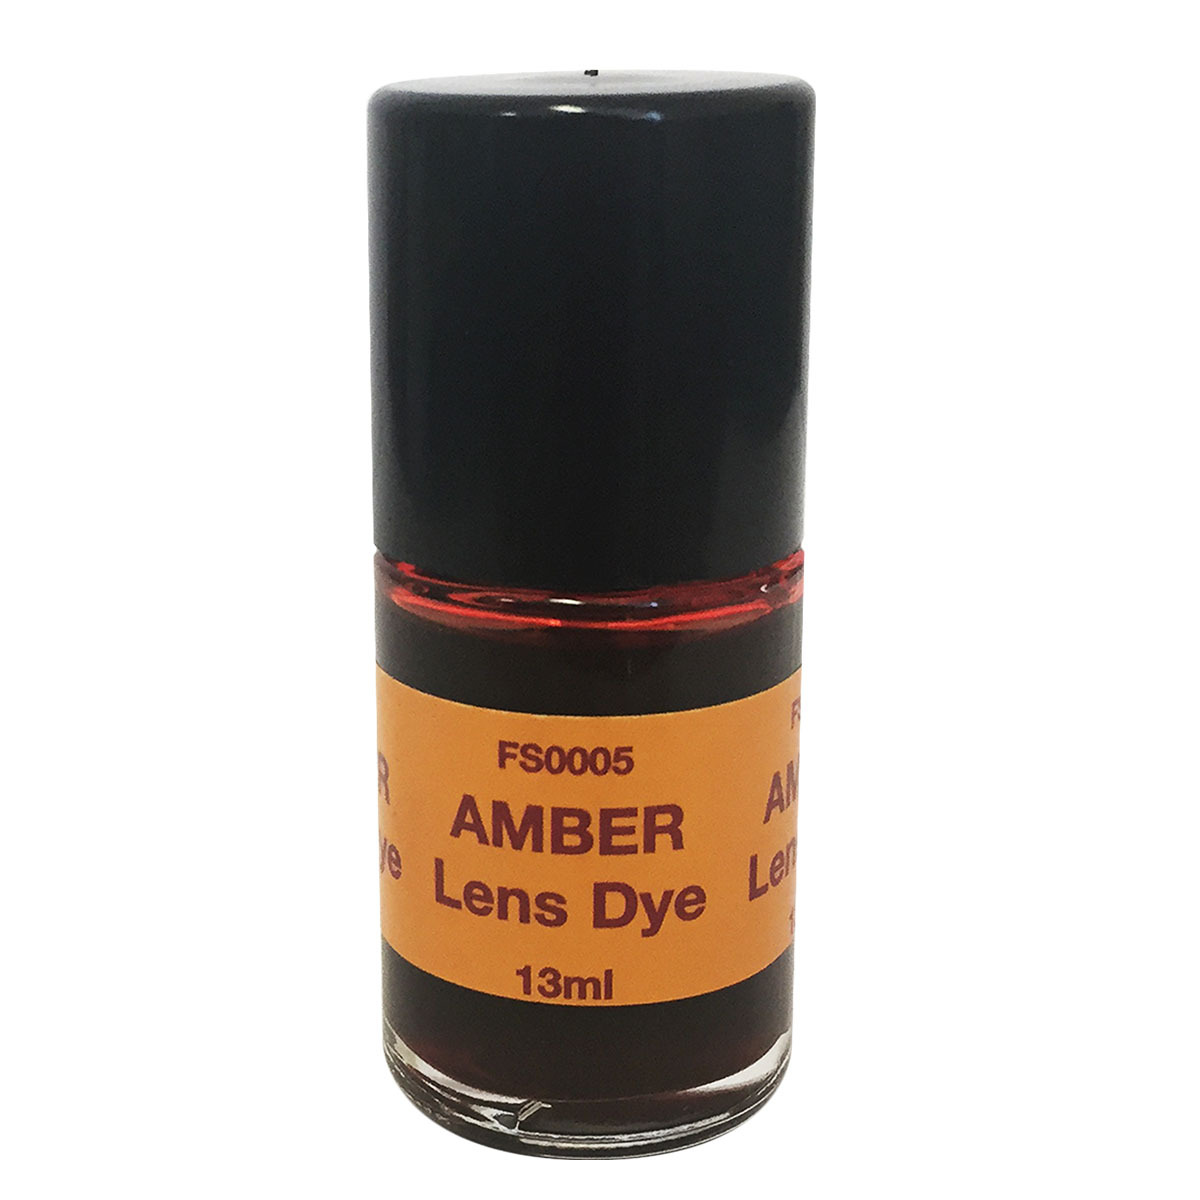 Lens Dye Amber 13ml Brush Cap